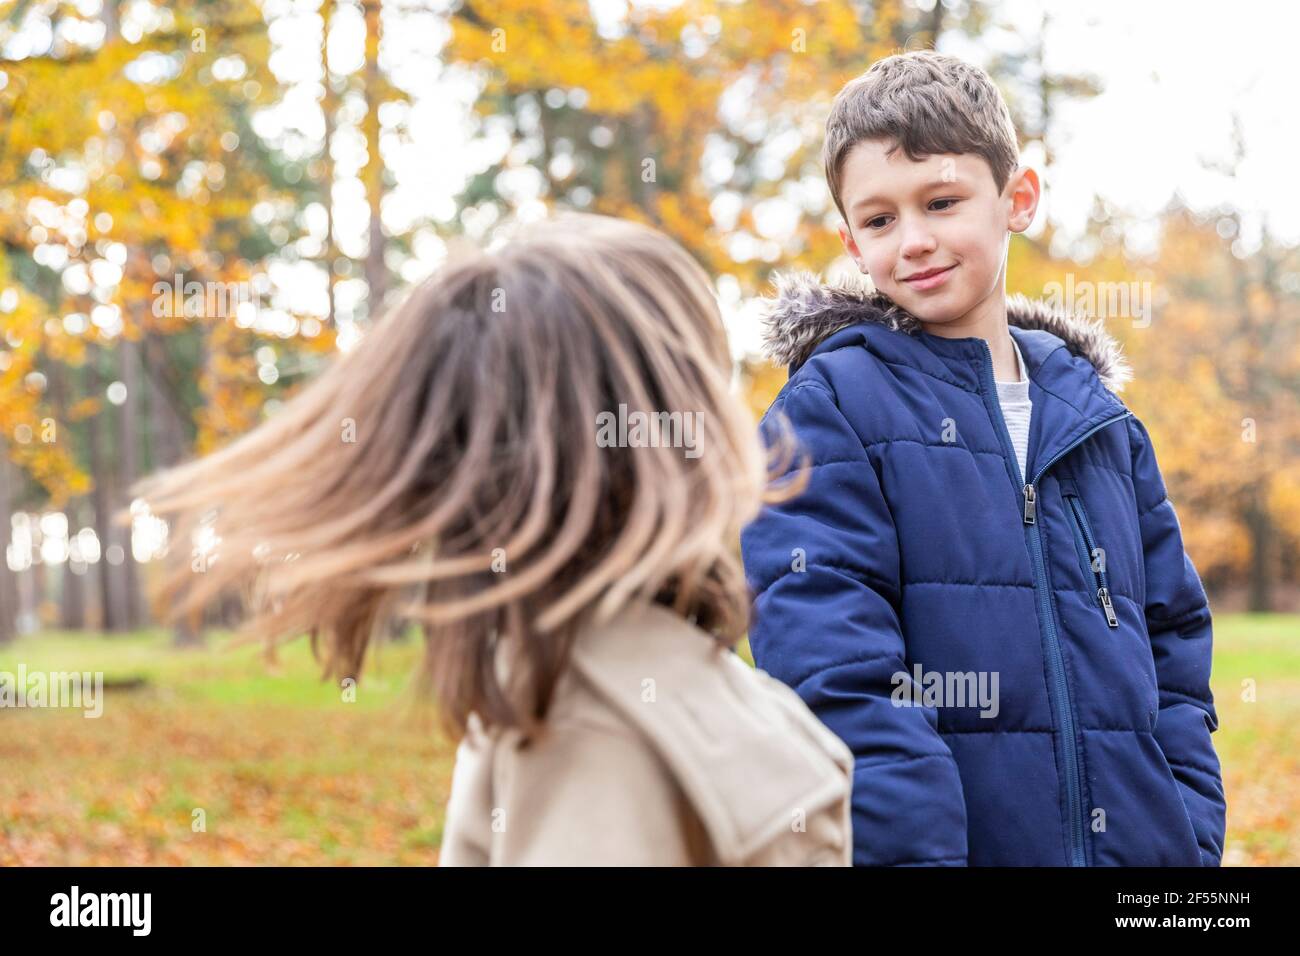 Bruder sieht Schwester spielen, während sie im Wald steht Stockfoto